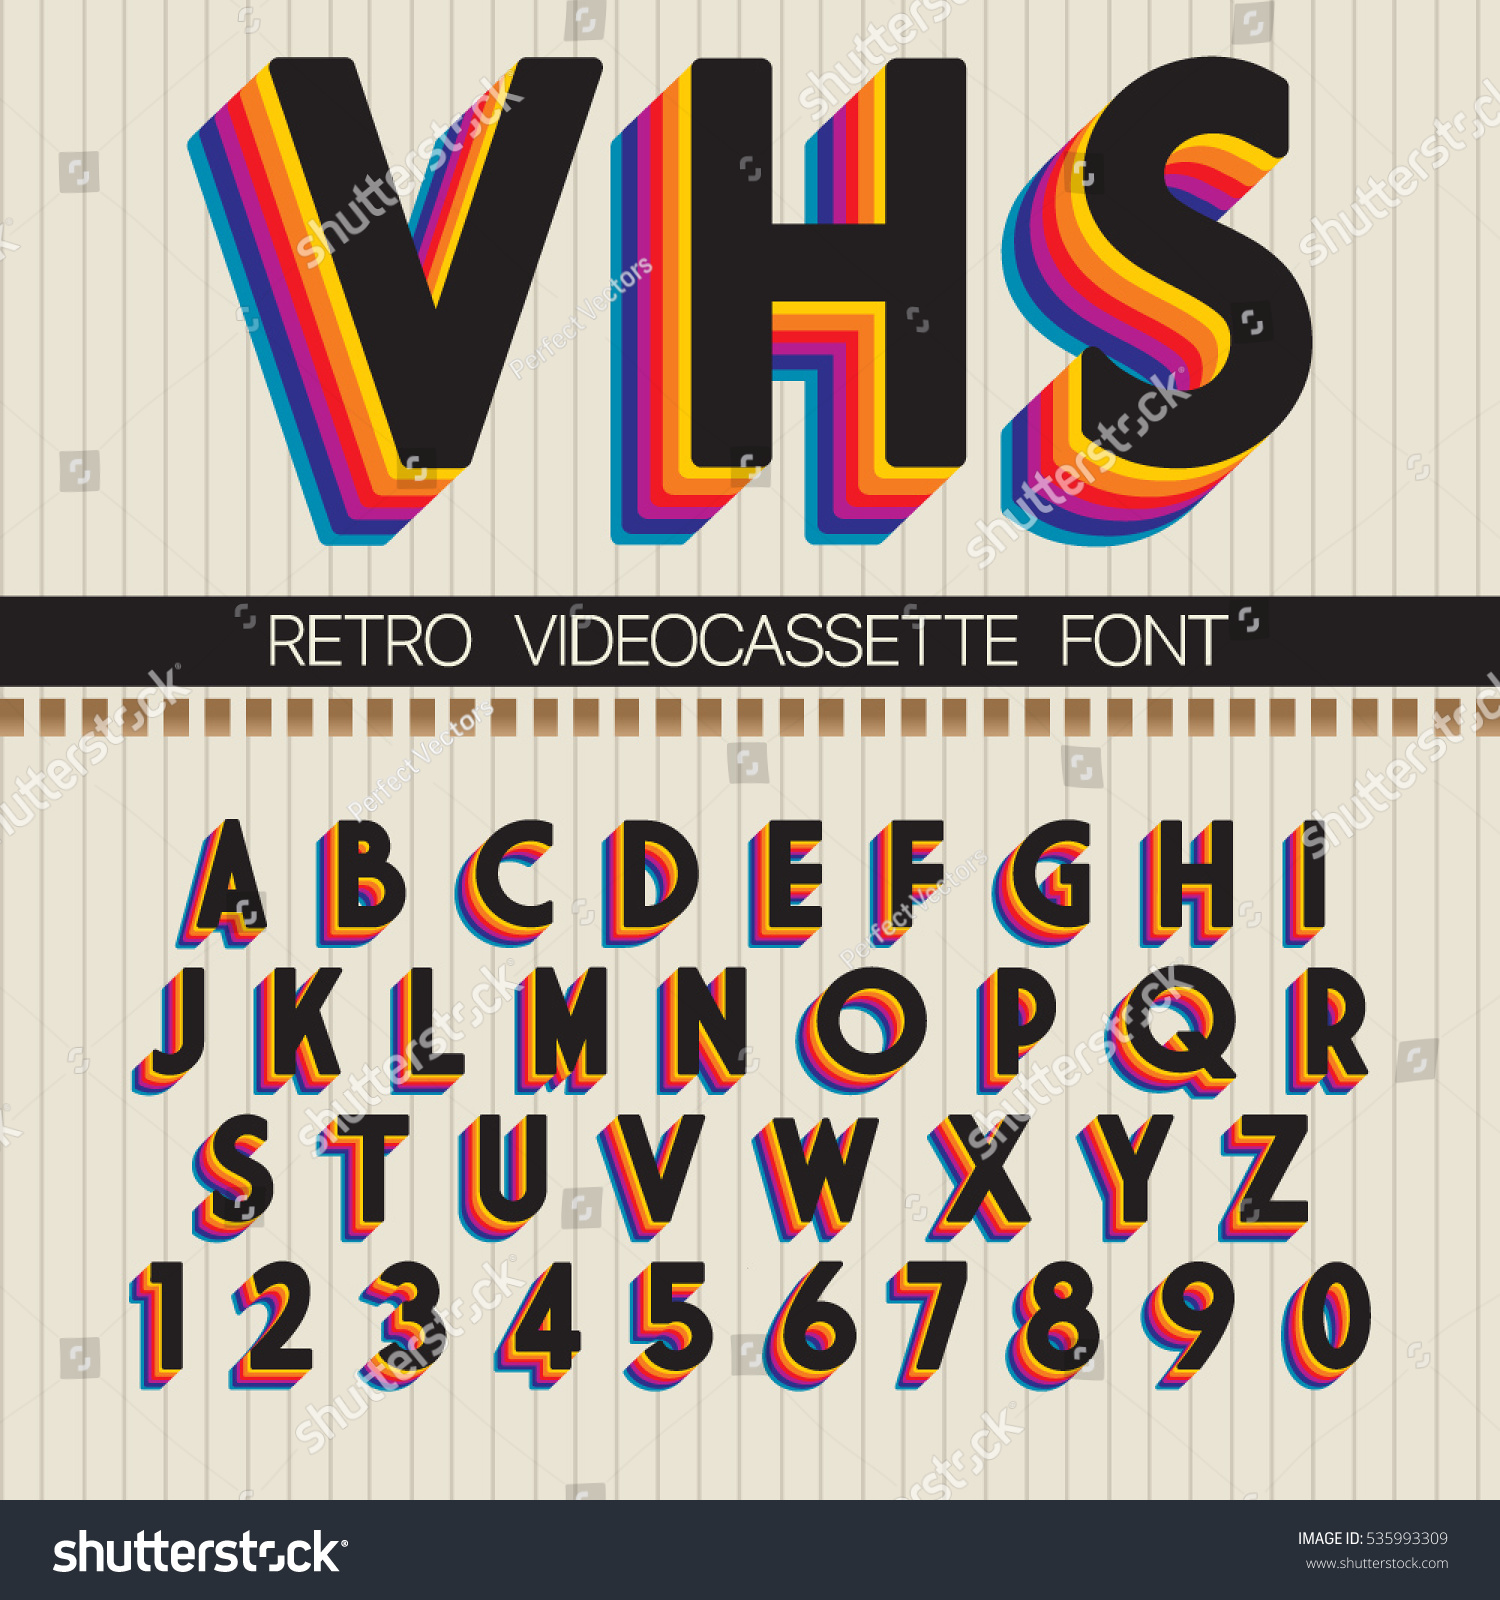 90s retro font Stock Vectors, Images & Vector Art Shutterstock.